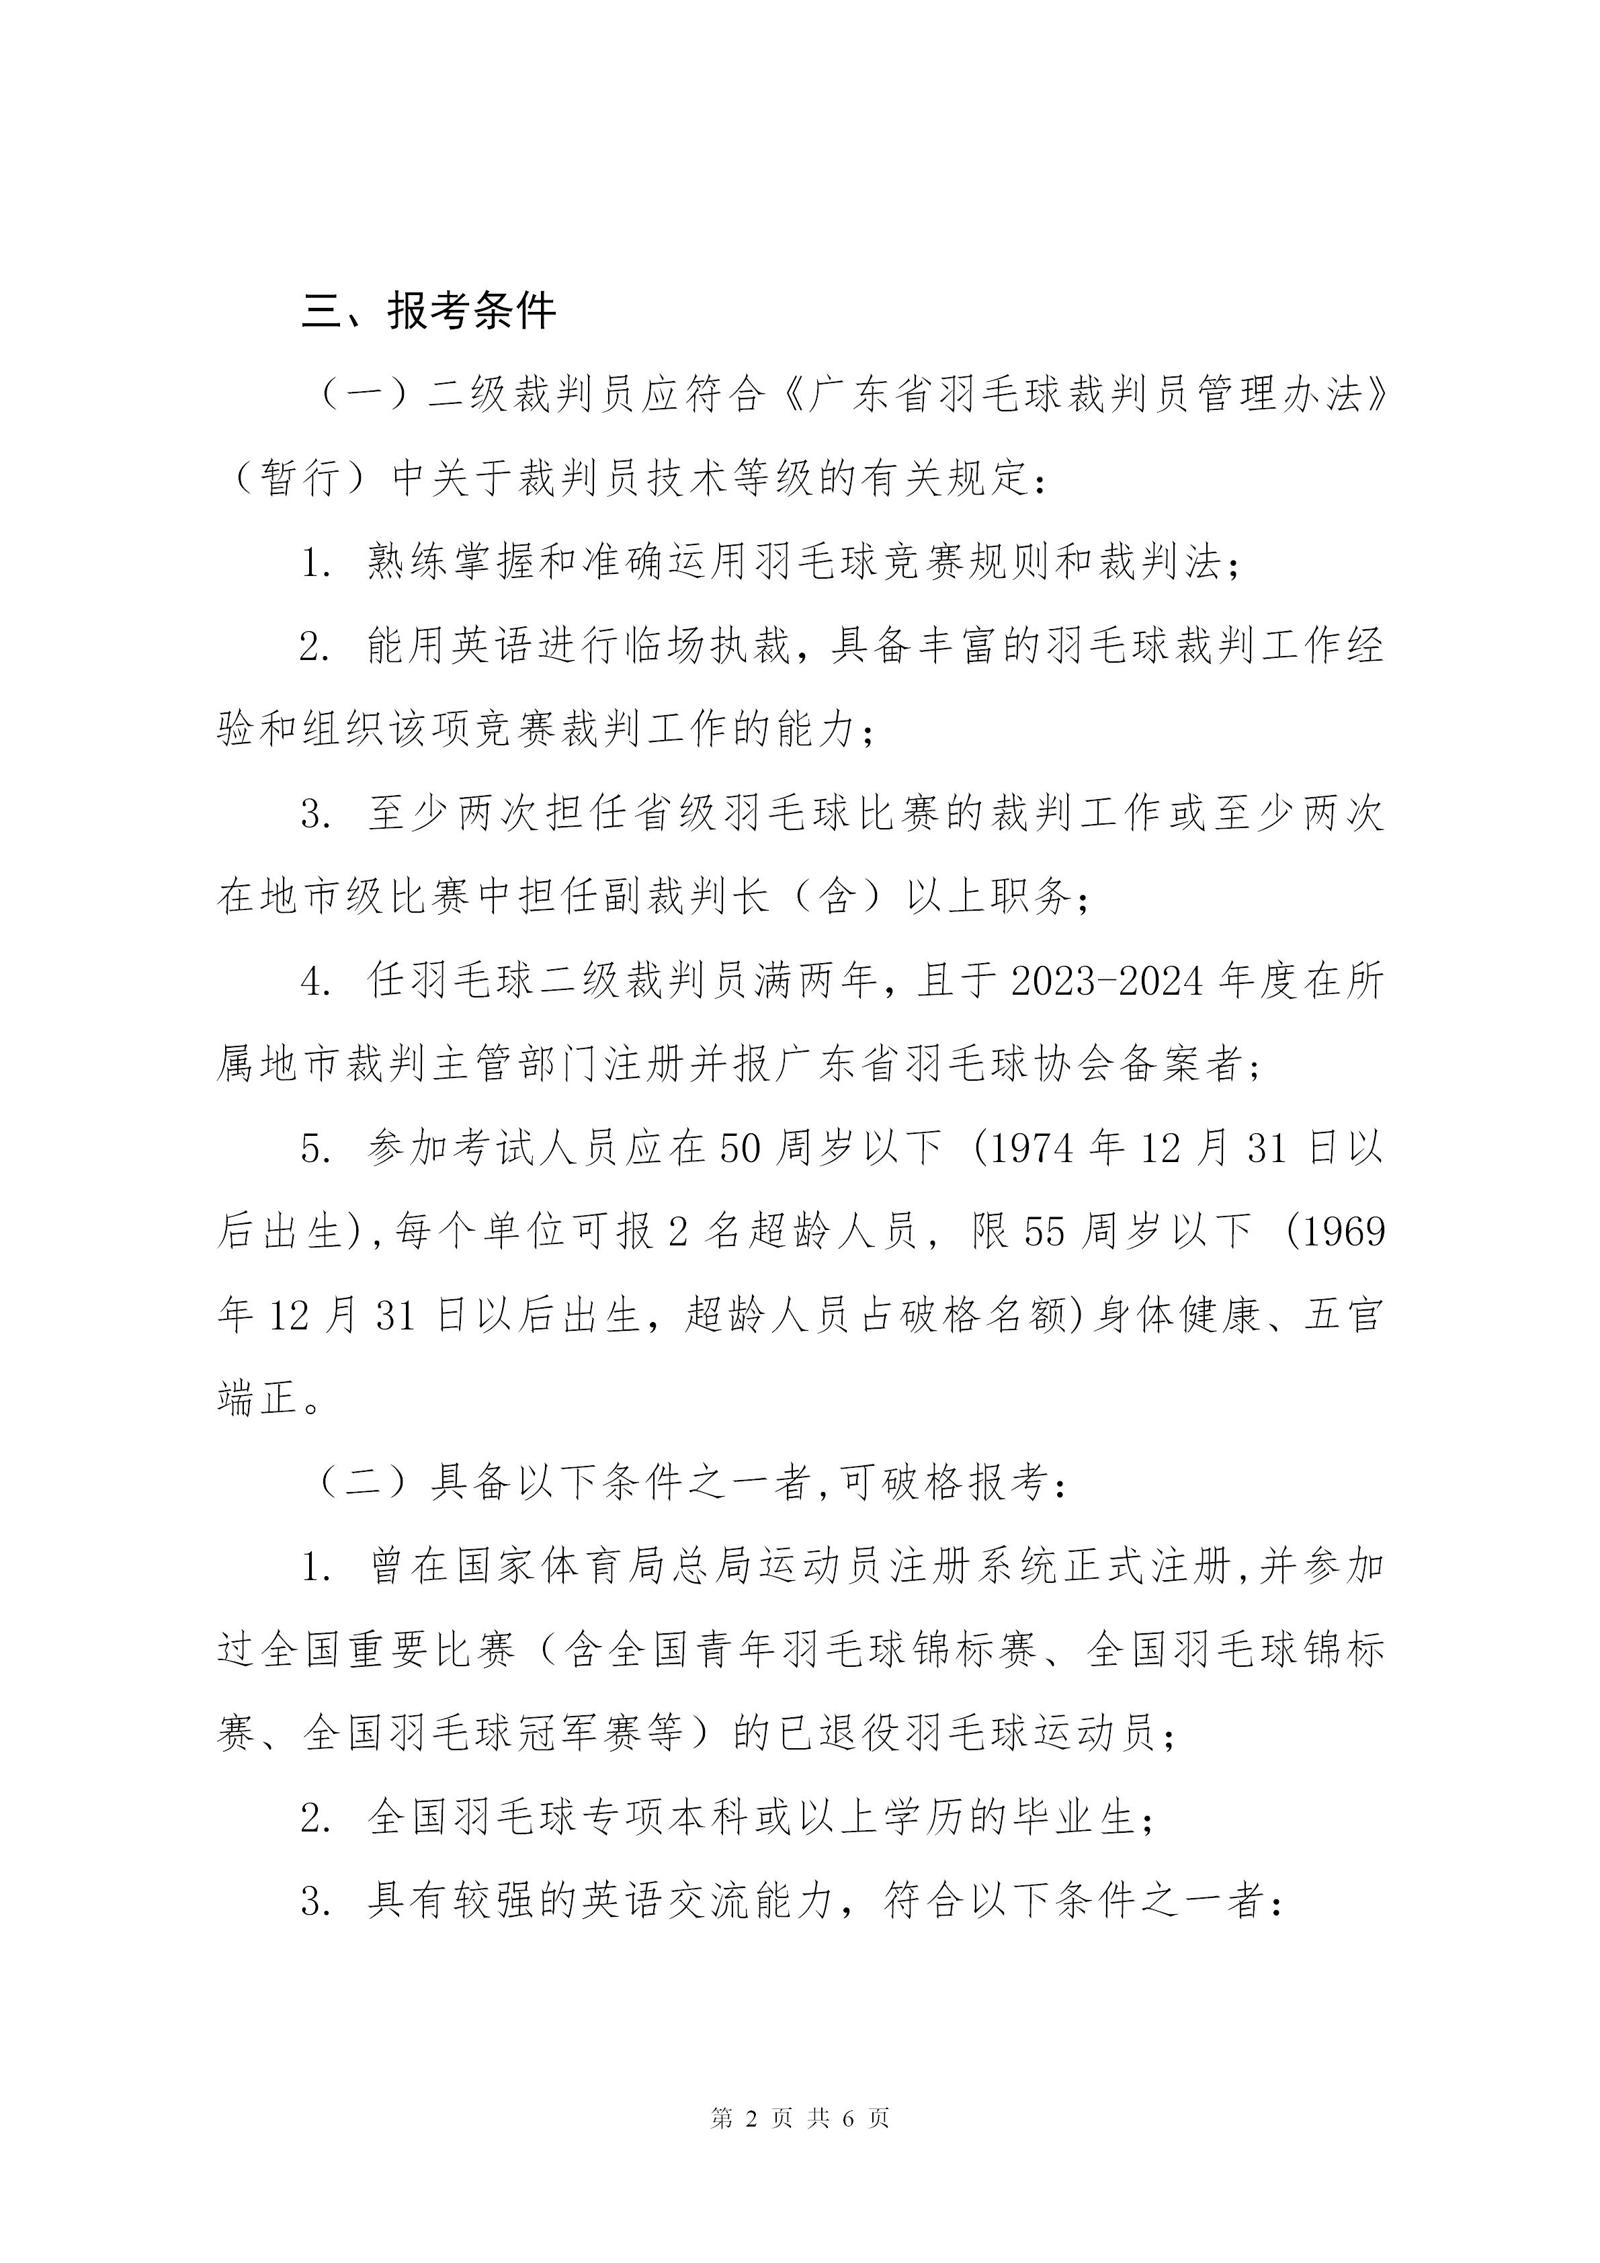 关于2024年广东省羽毛球项目晋升一级裁判员的通知_02